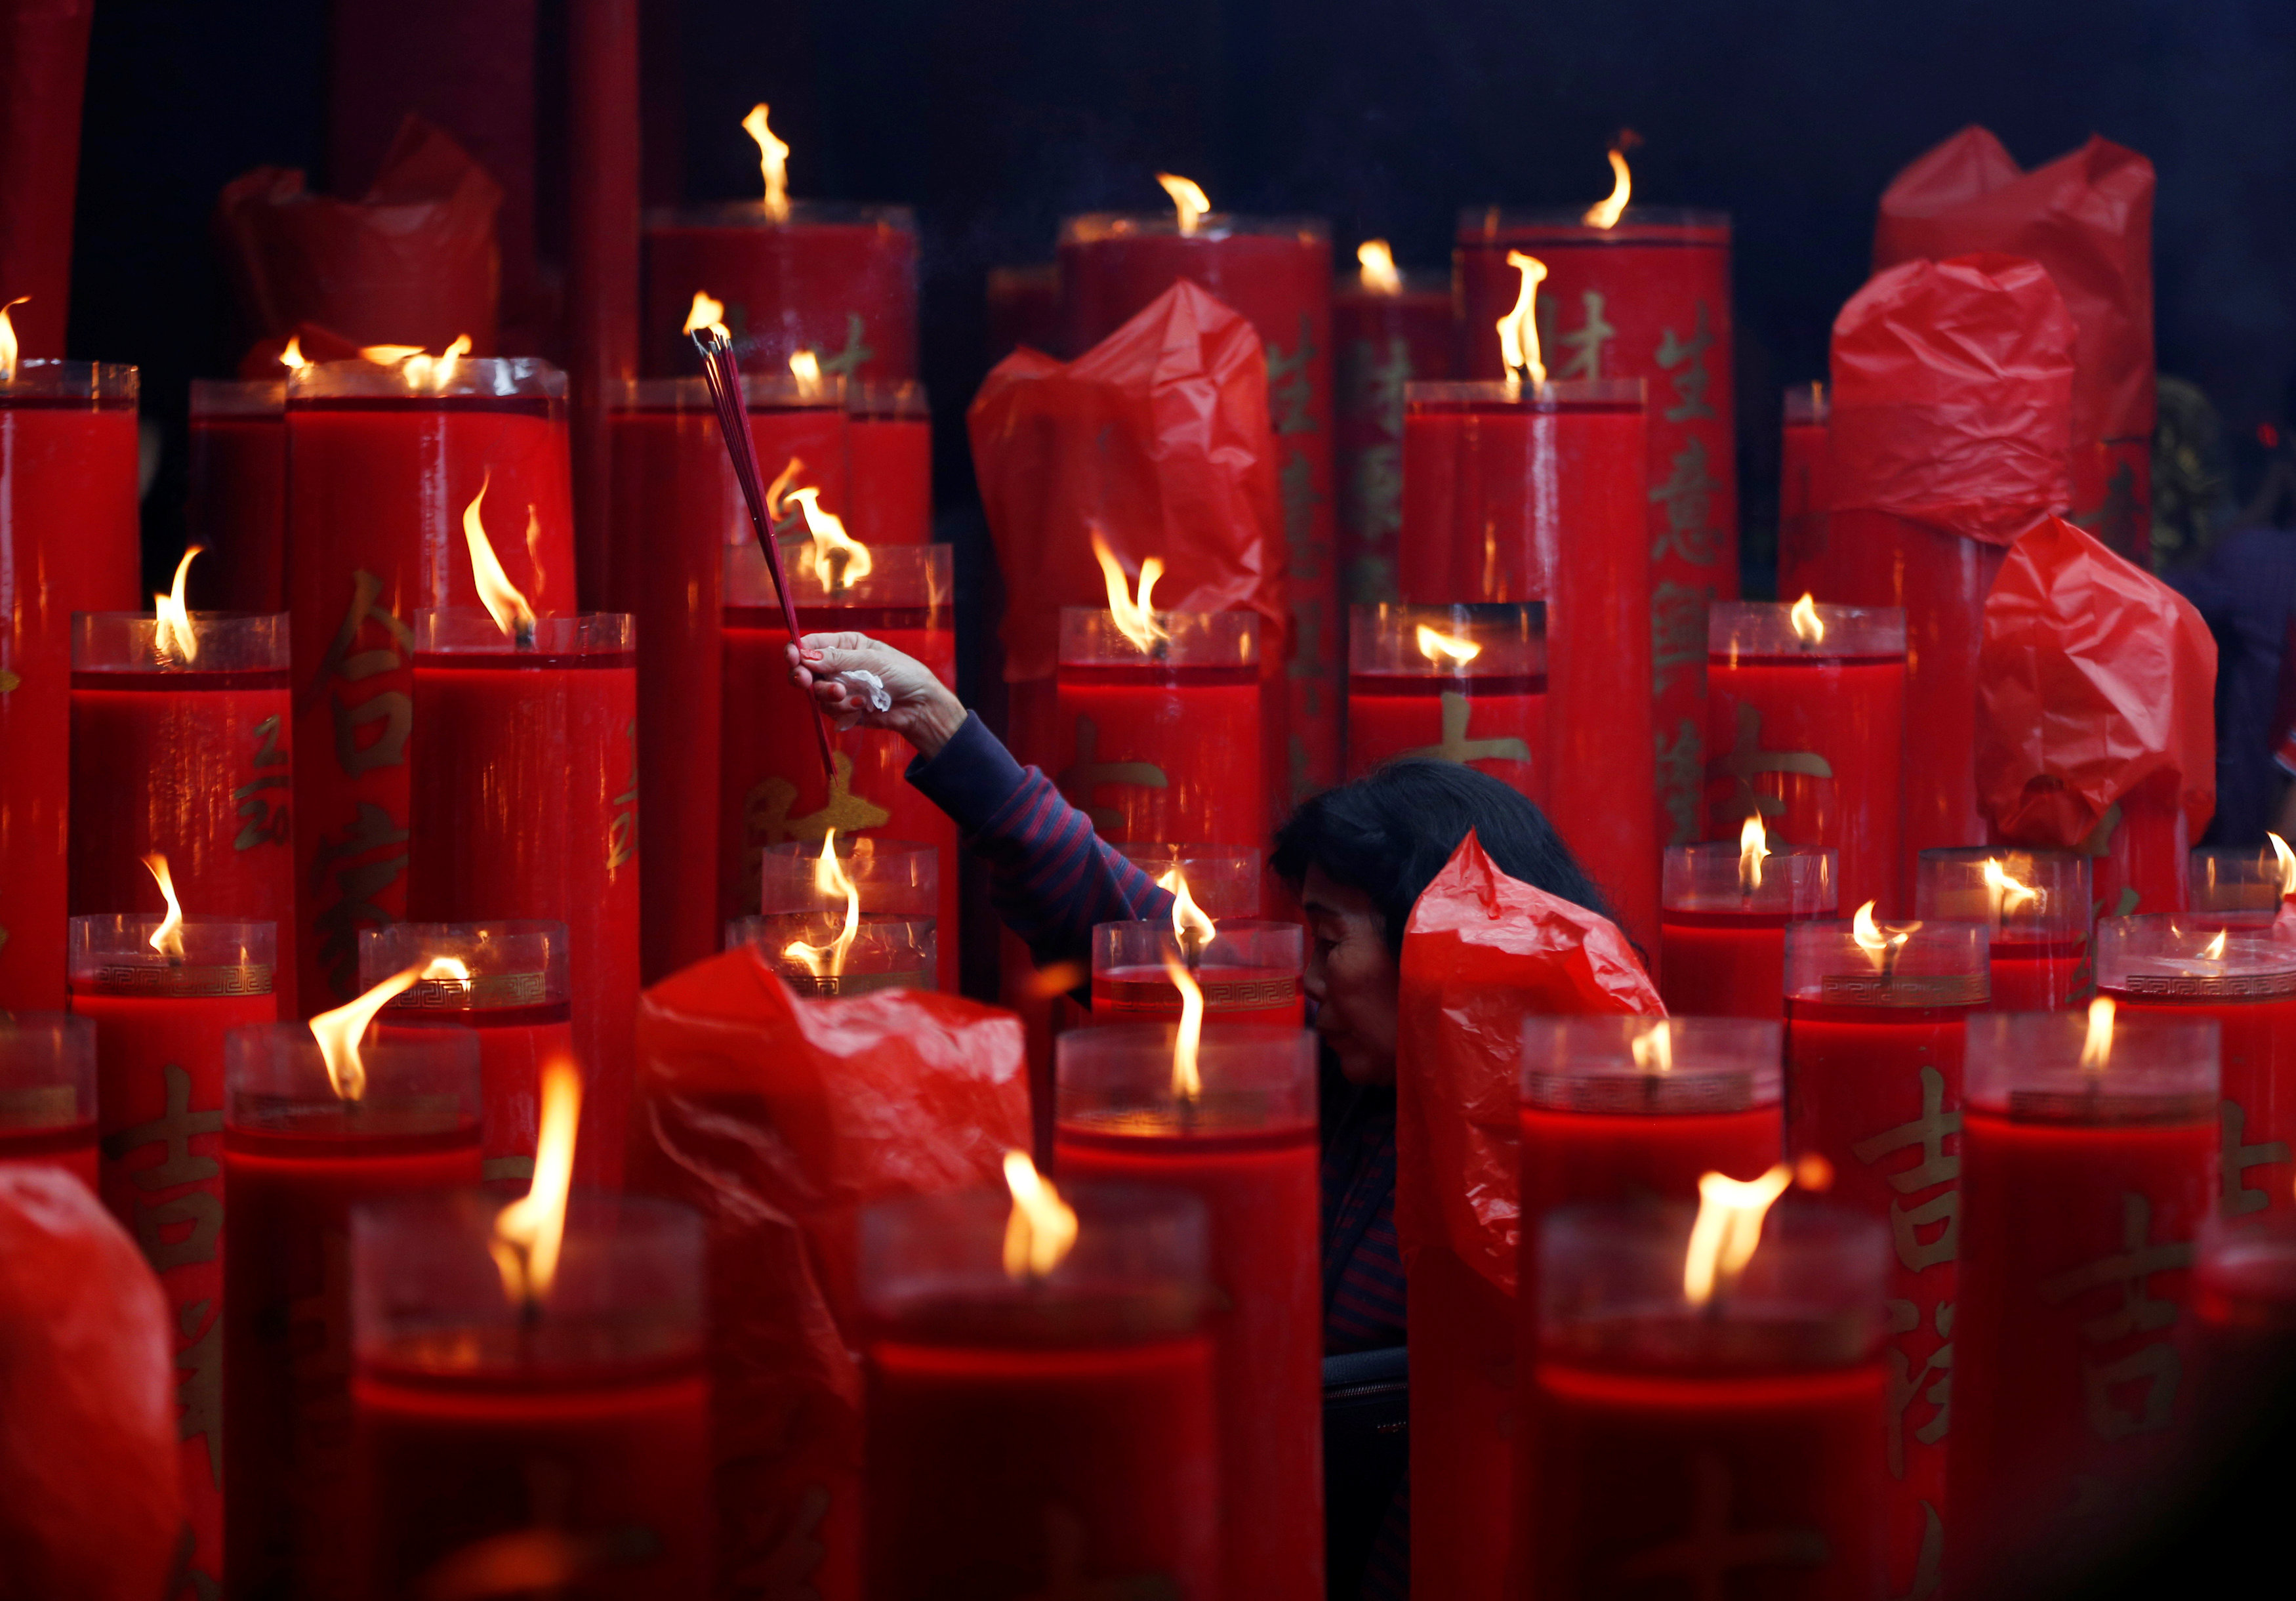 سيدة تشعل البخور والشموع داخل معبد فى اندونيسيا احتفالًا بالسنة القمرية الجديدة